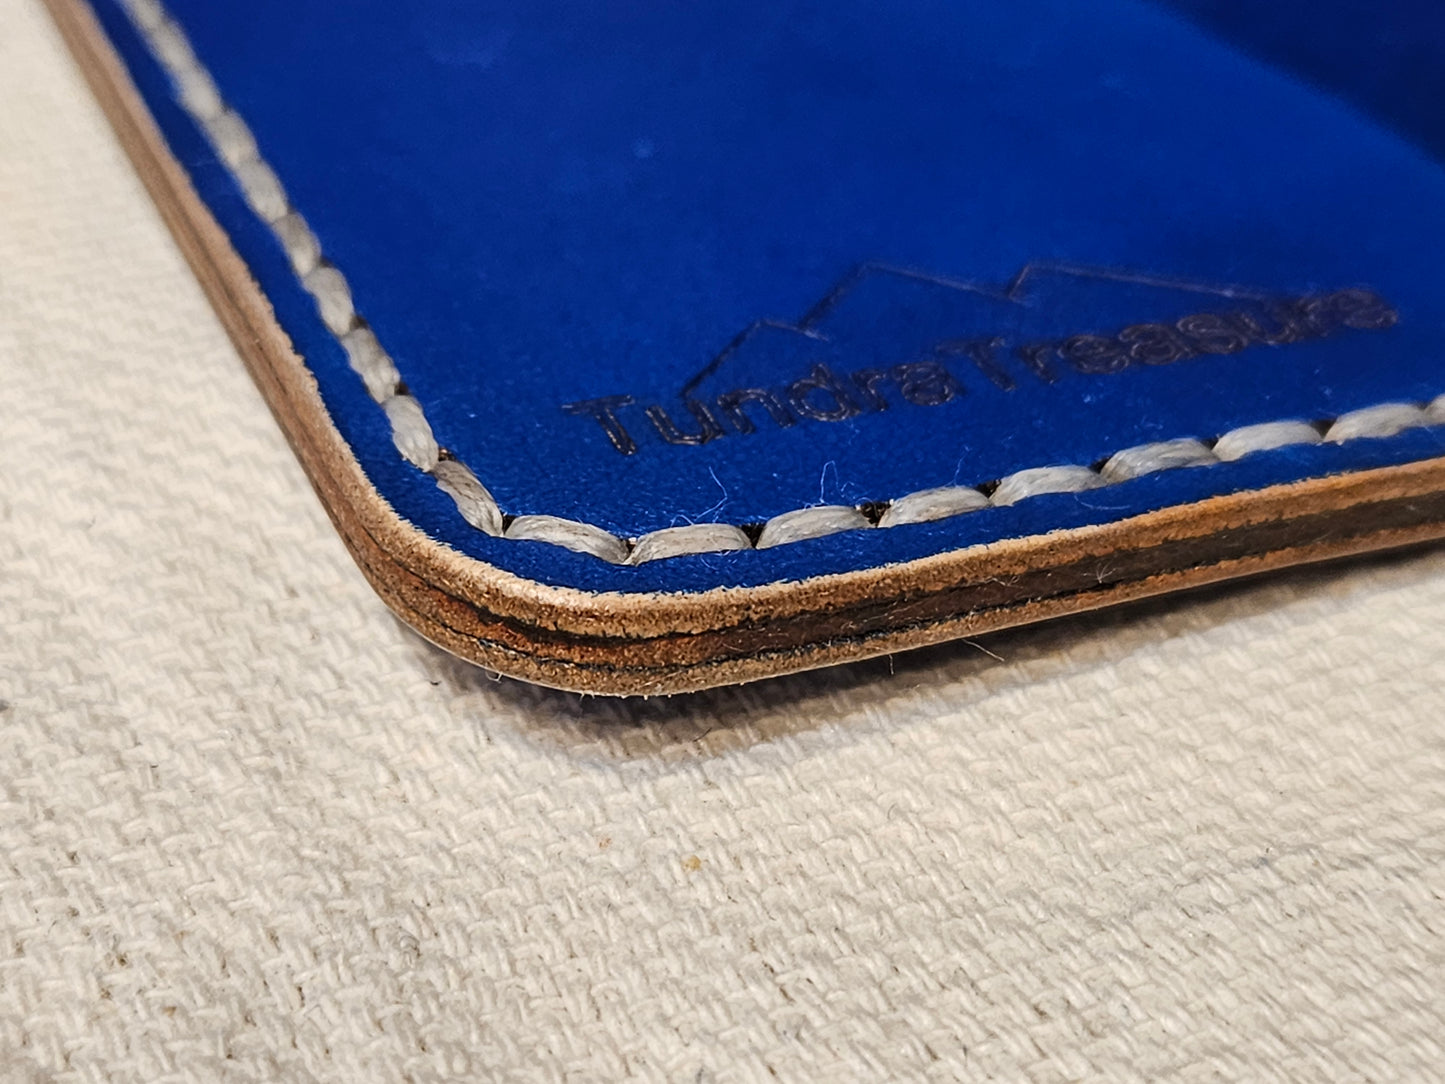 Fired Deep Ocean - Handmade Leather Bifold Wallet